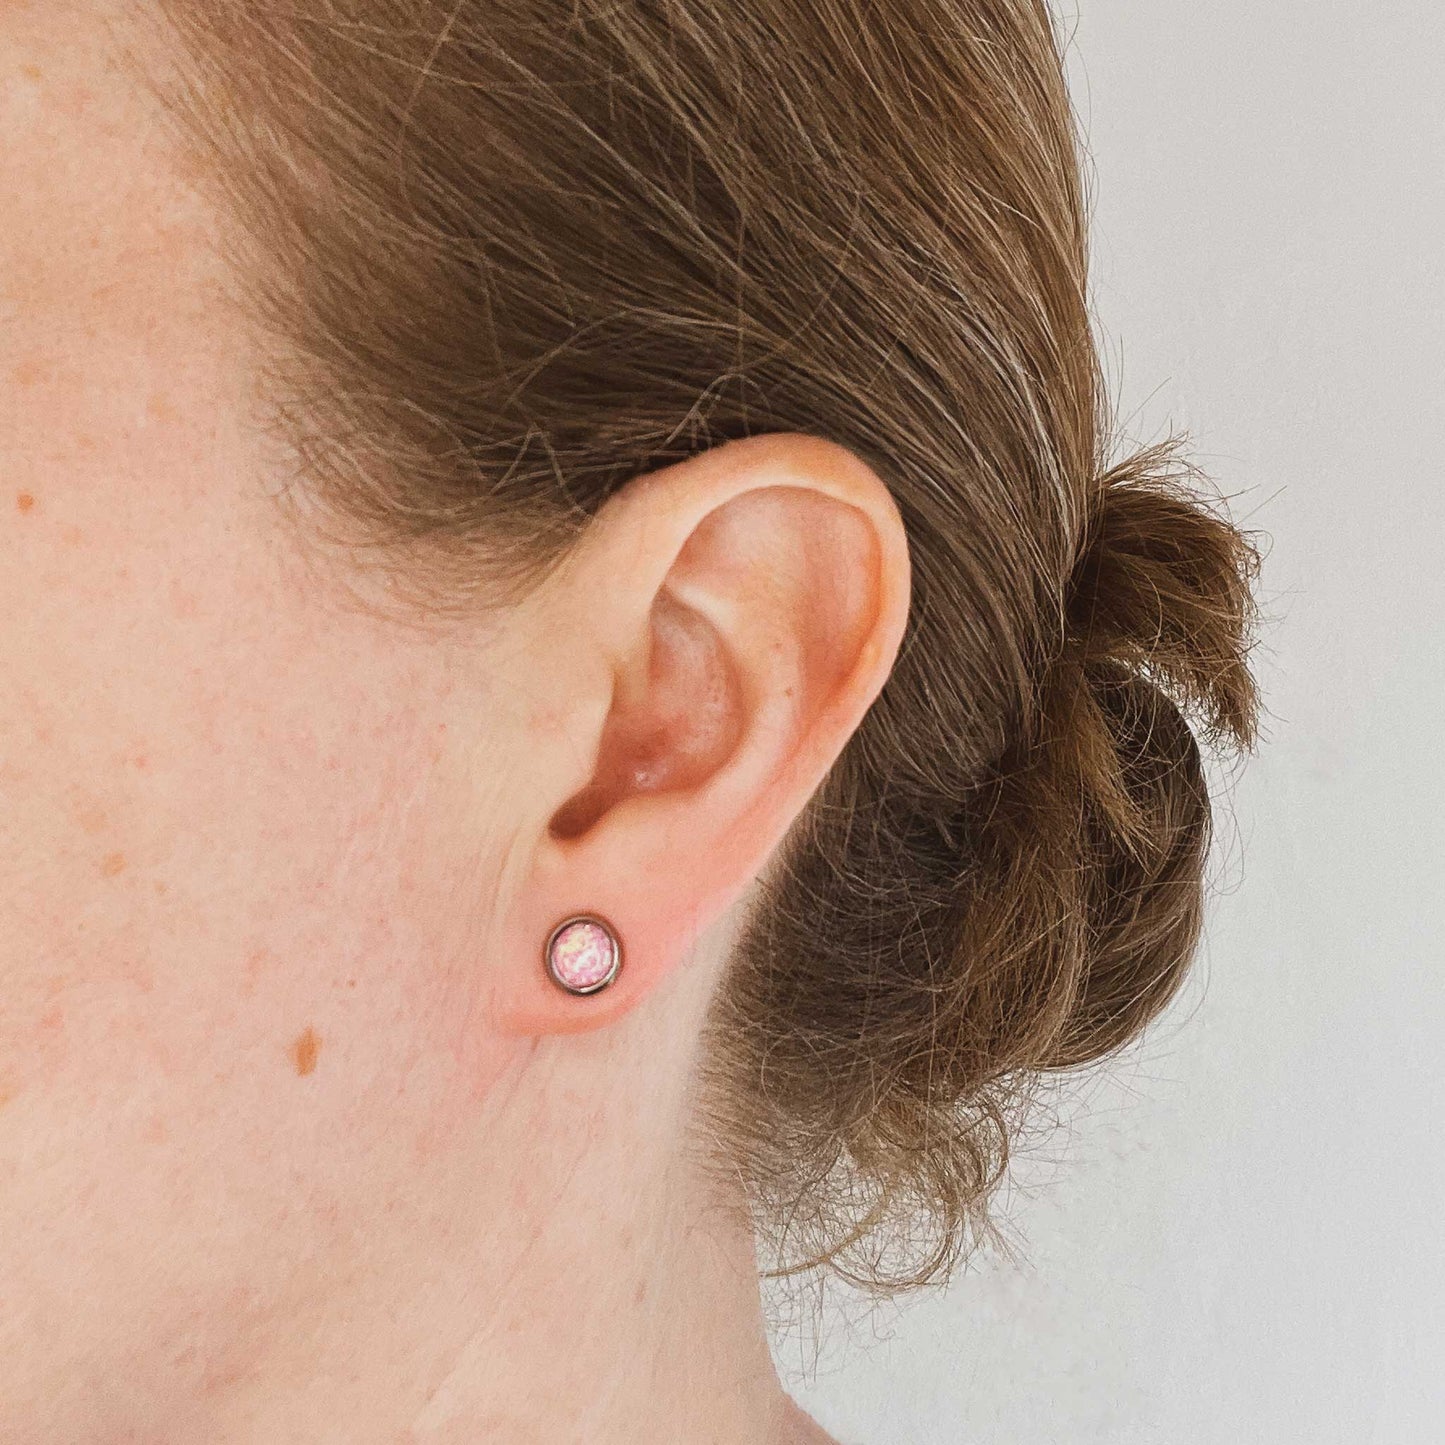 Woman wearing pink Opal stud earring in earlobe